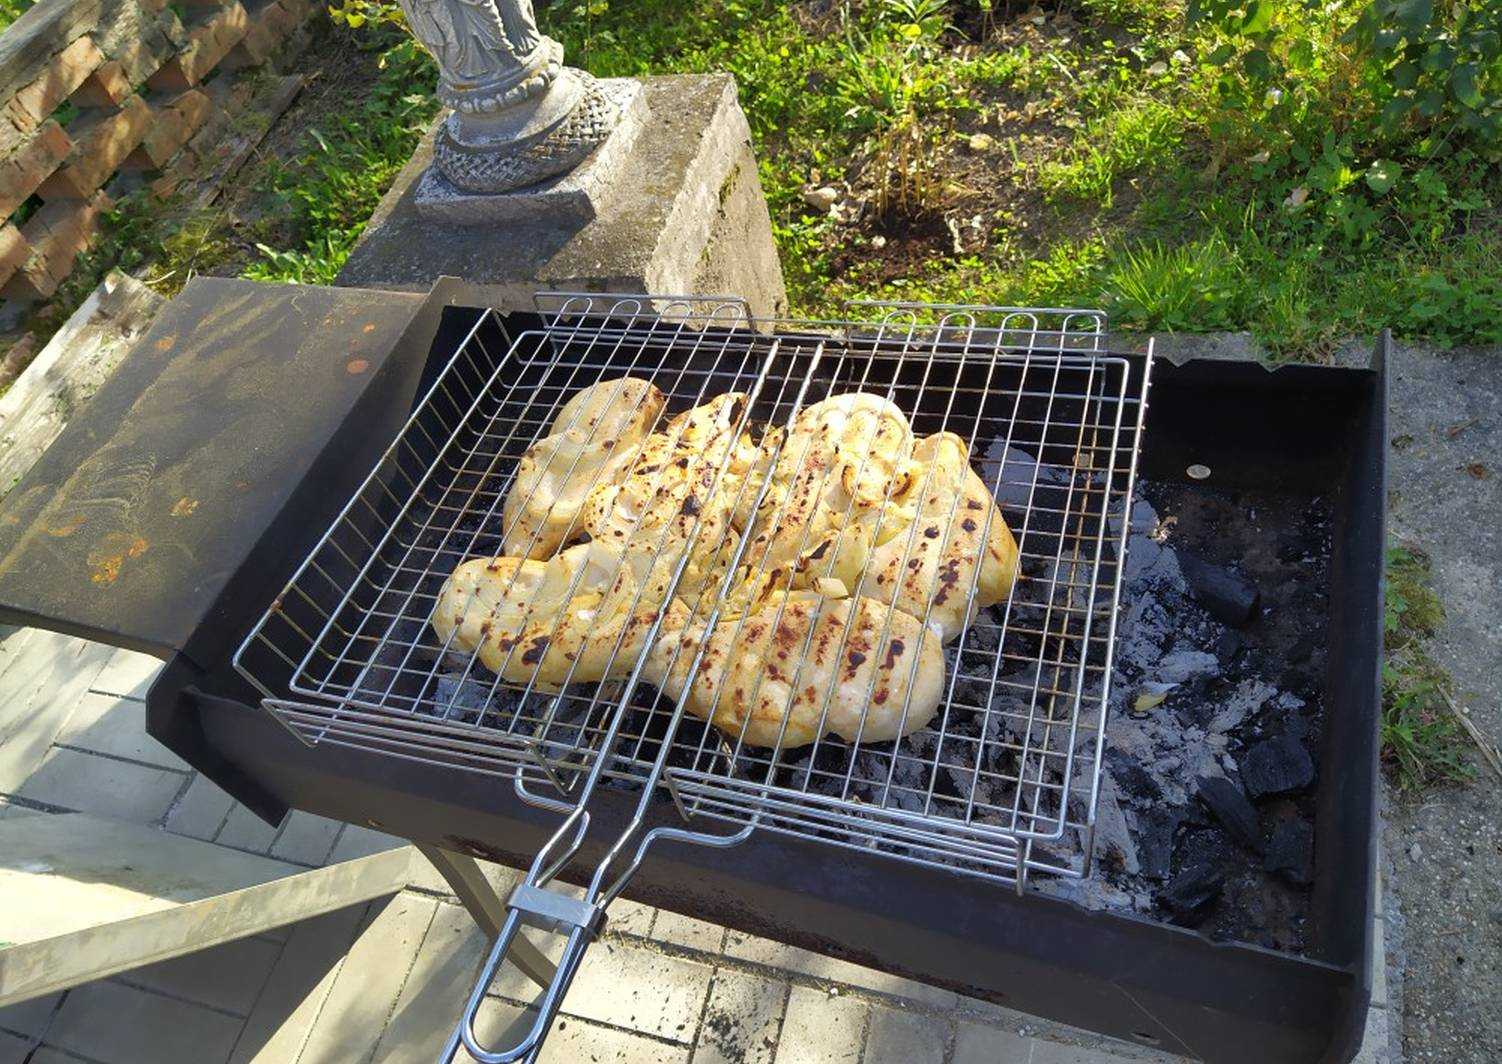 Шашлык на кефире из курицы рецепт с фото пошагово